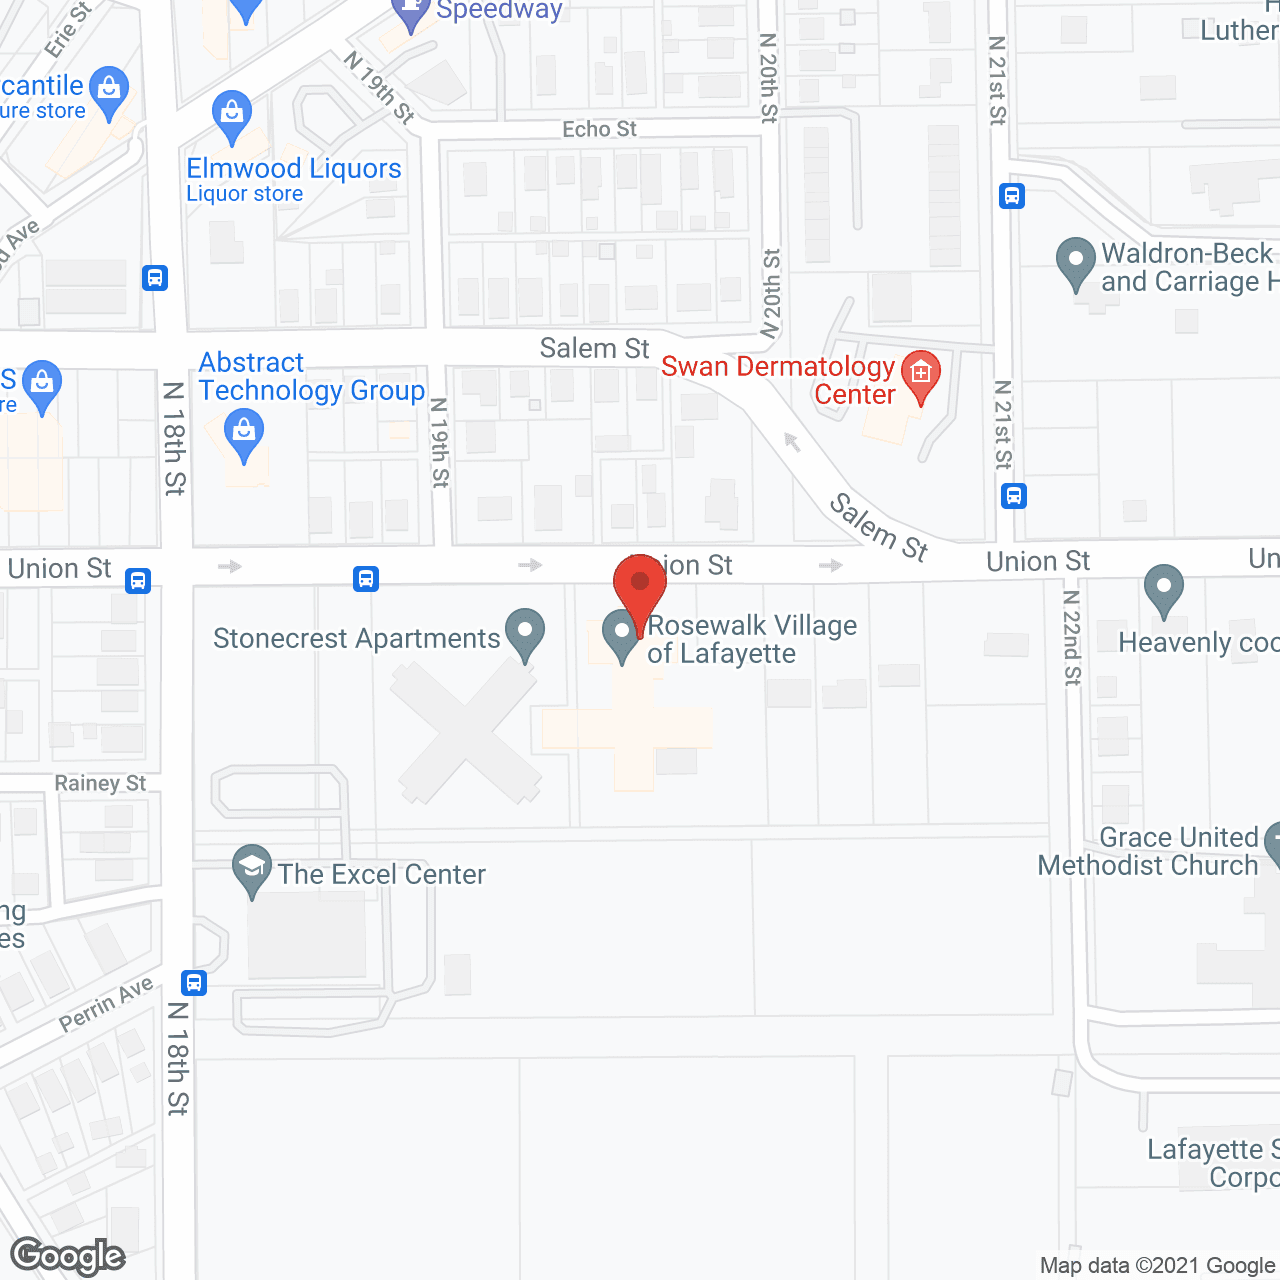 Rosewalk Village of Lafayette in google map